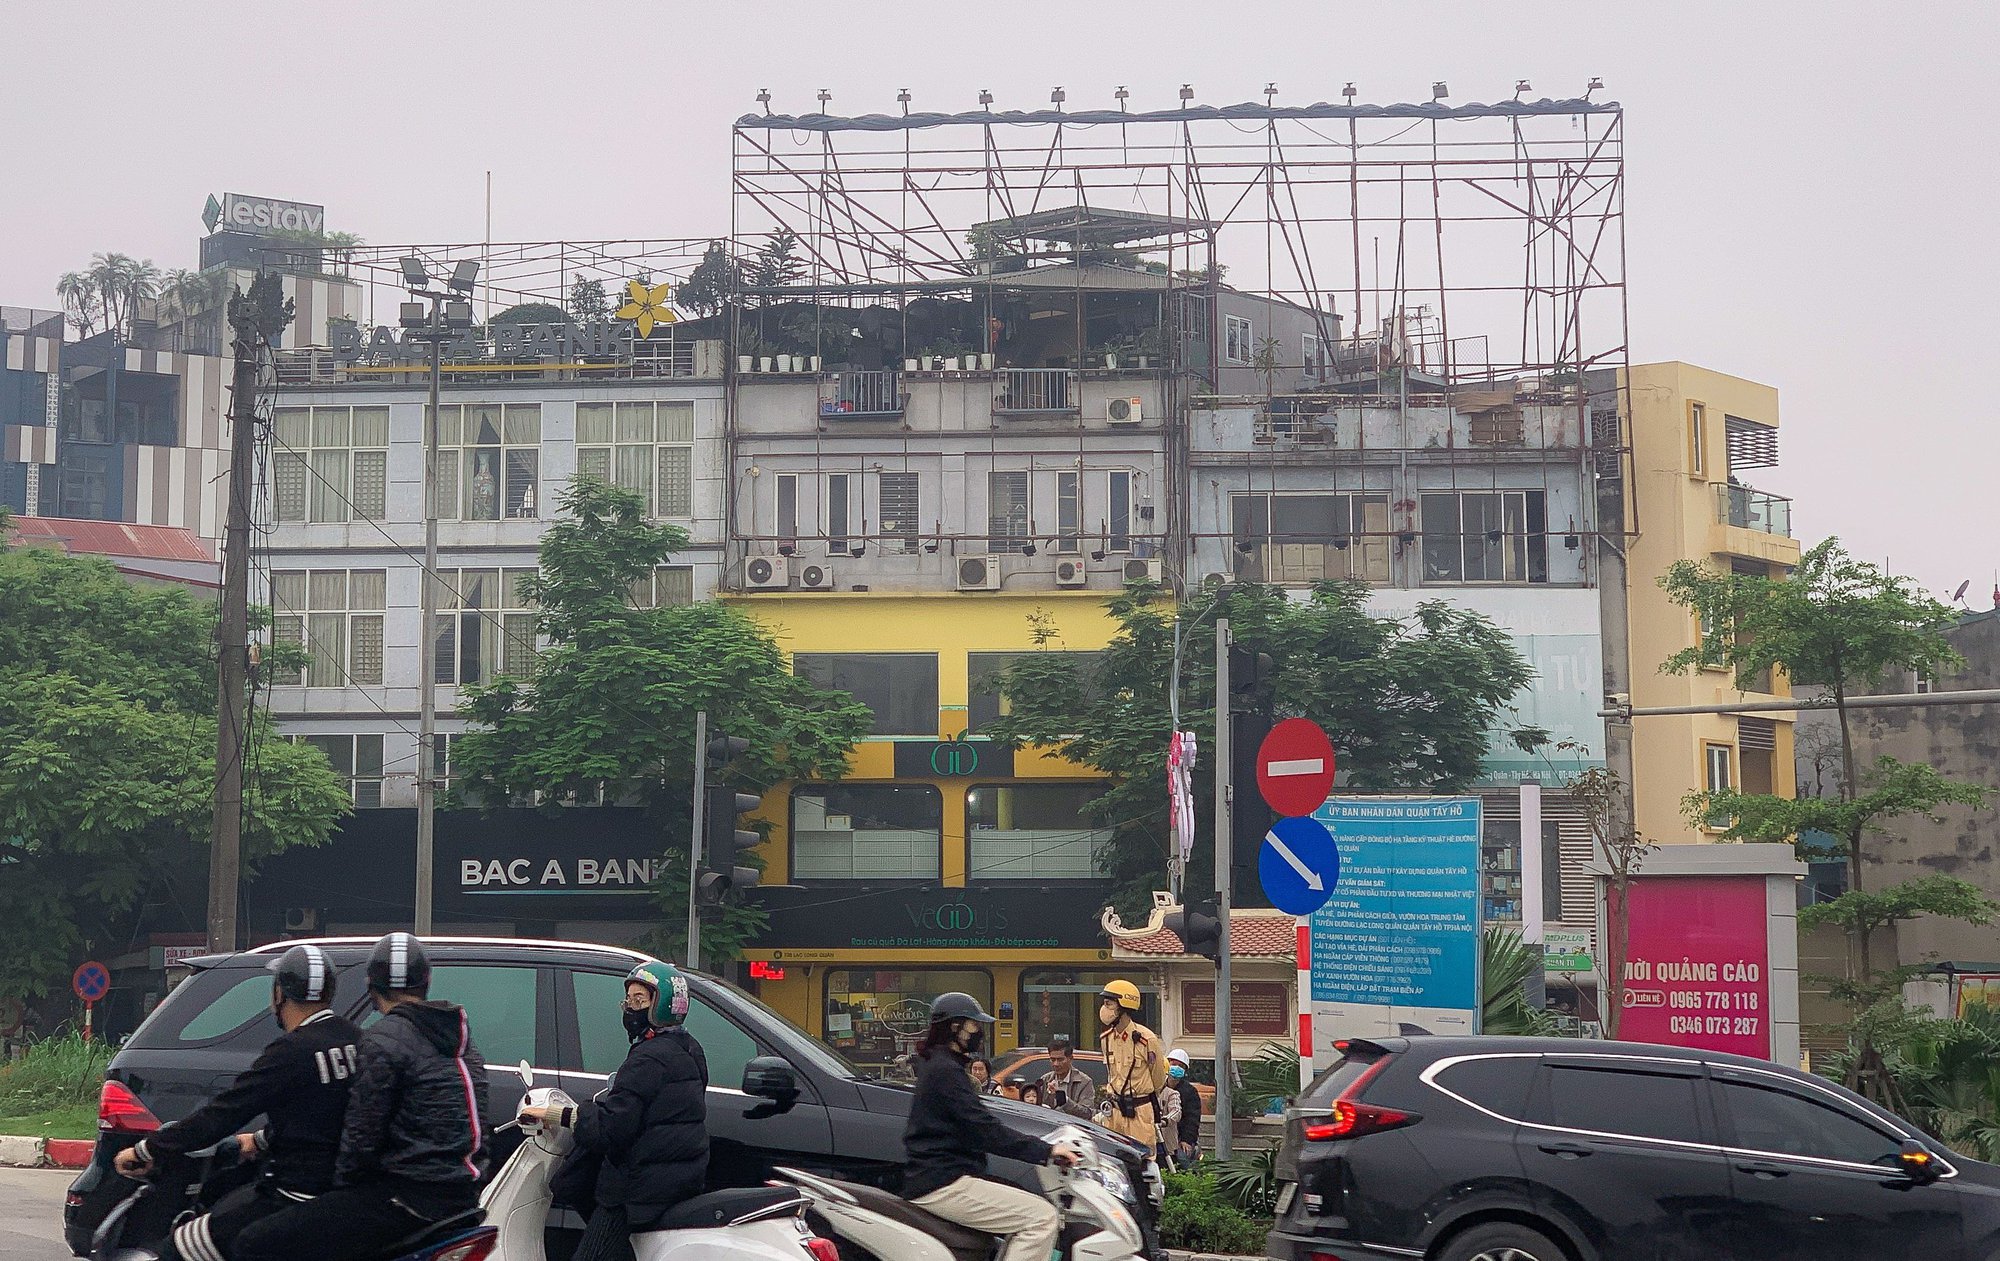 Cận cảnh ma trận bảng biển quảng cáo có dấu hiệu vi phạm trật tự xây dựng ở Hà Nội - Ảnh 11.